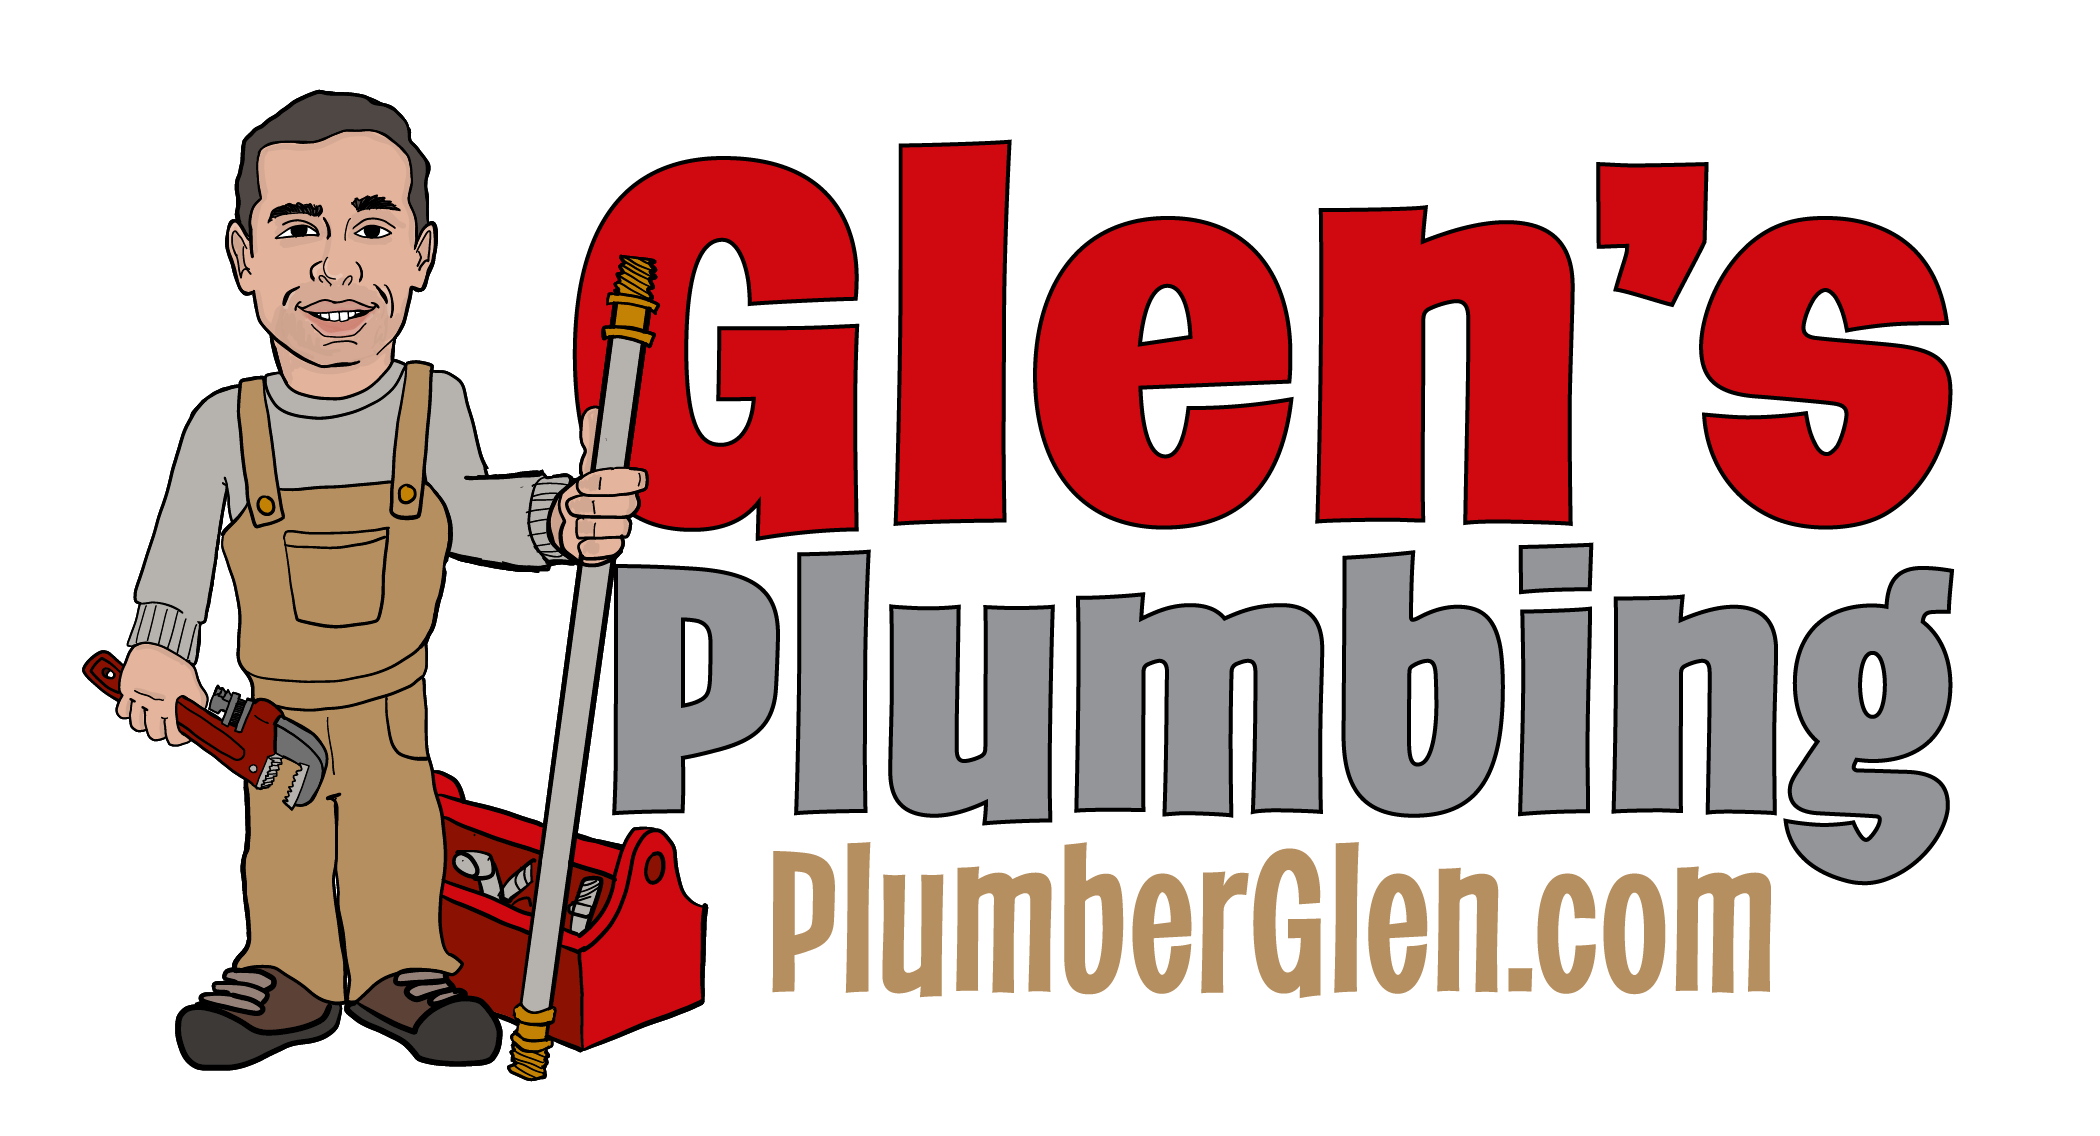 Glen Friot Plumbing